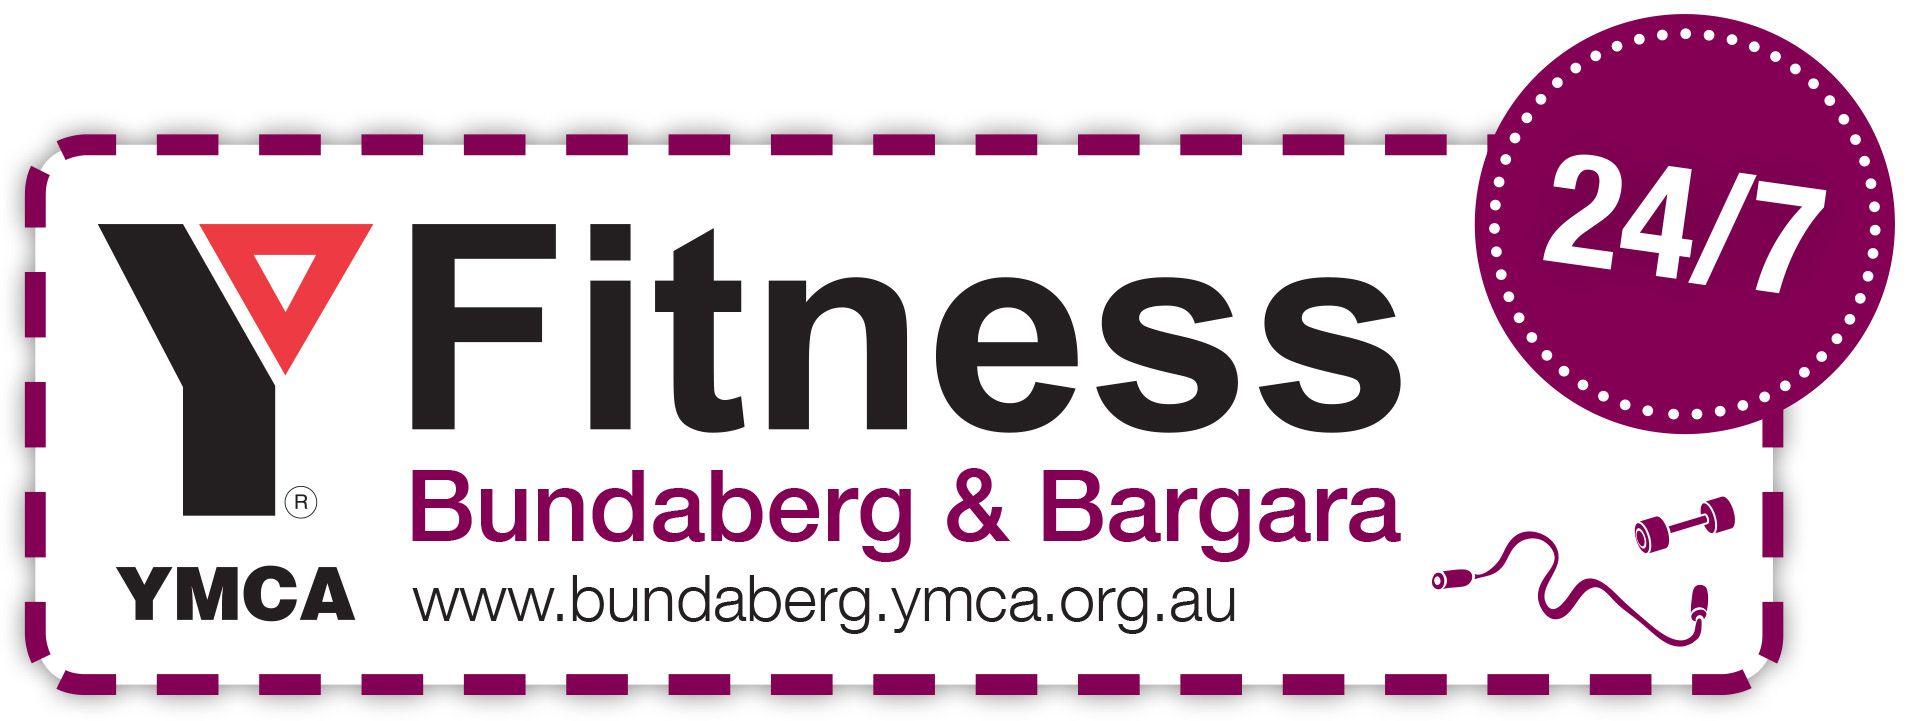 Purle YMCA Logo - YMCA Bundaberg - Y Fitness Bundaberg 24/7